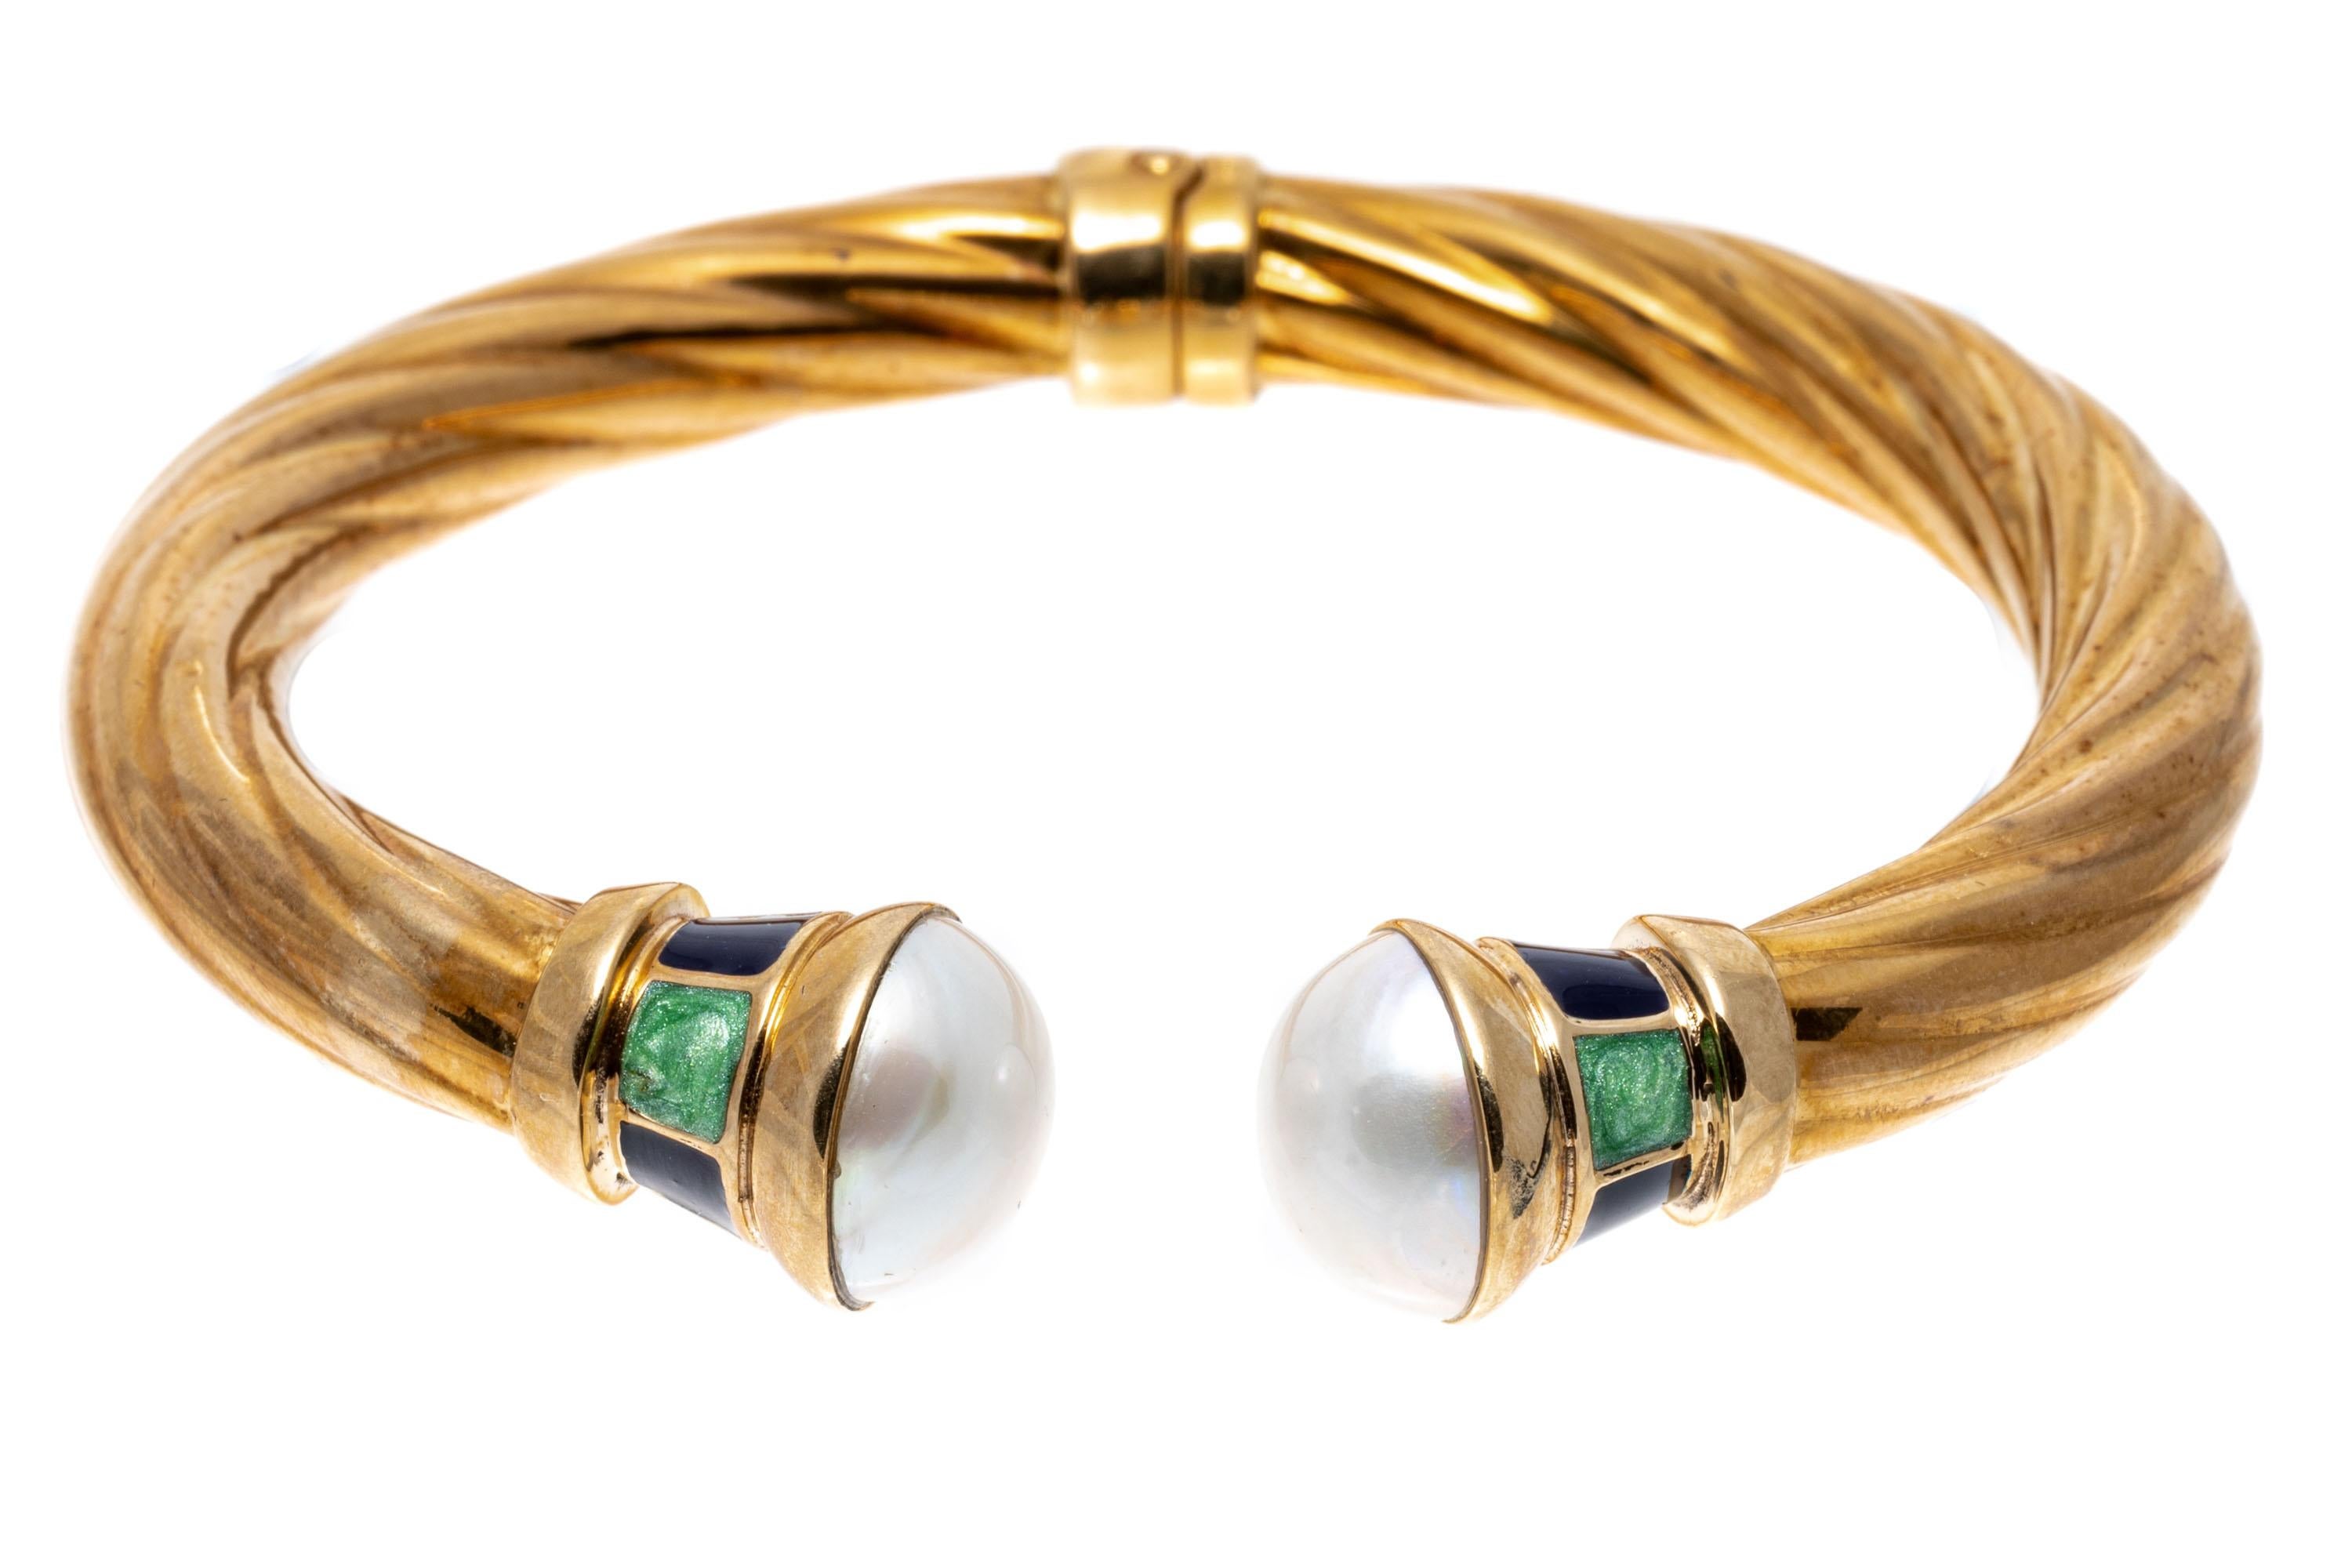 bracelet manchette ouvert en or jaune 14k avec perles Mabe et émail vert et bleu.
Ce bracelet coloré est un bracelet à charnière, de style manchette côtelée ouverte, avec des extrémités en perles de culture mabé, décorées de colliers d'émail